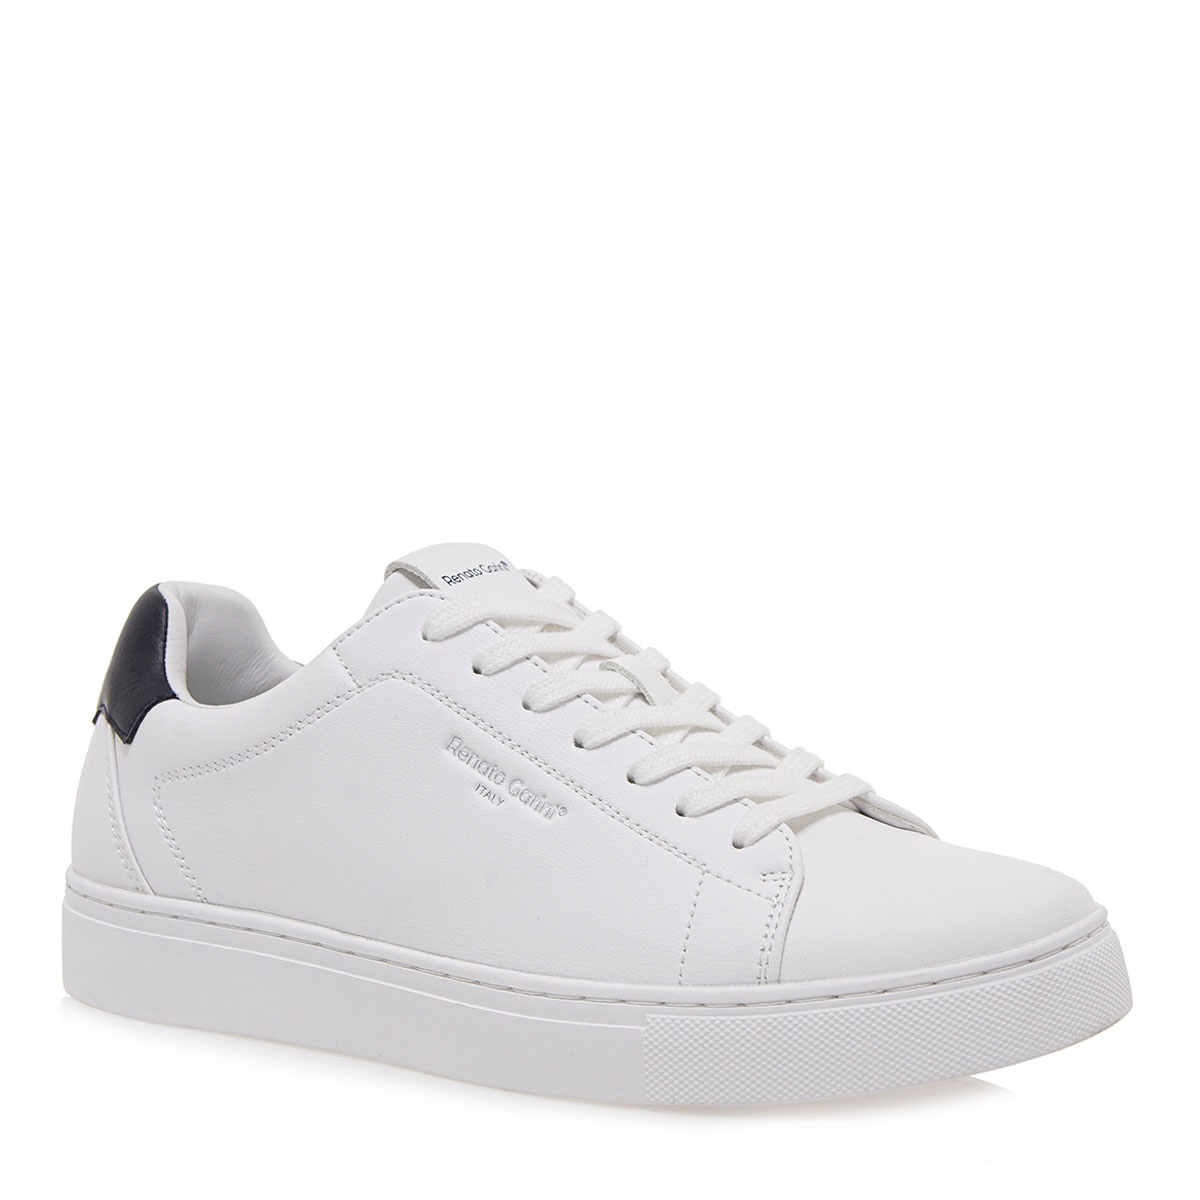 Ανδρικό Sneaker σε λευκό χρώμα Renato Garini S57001081174